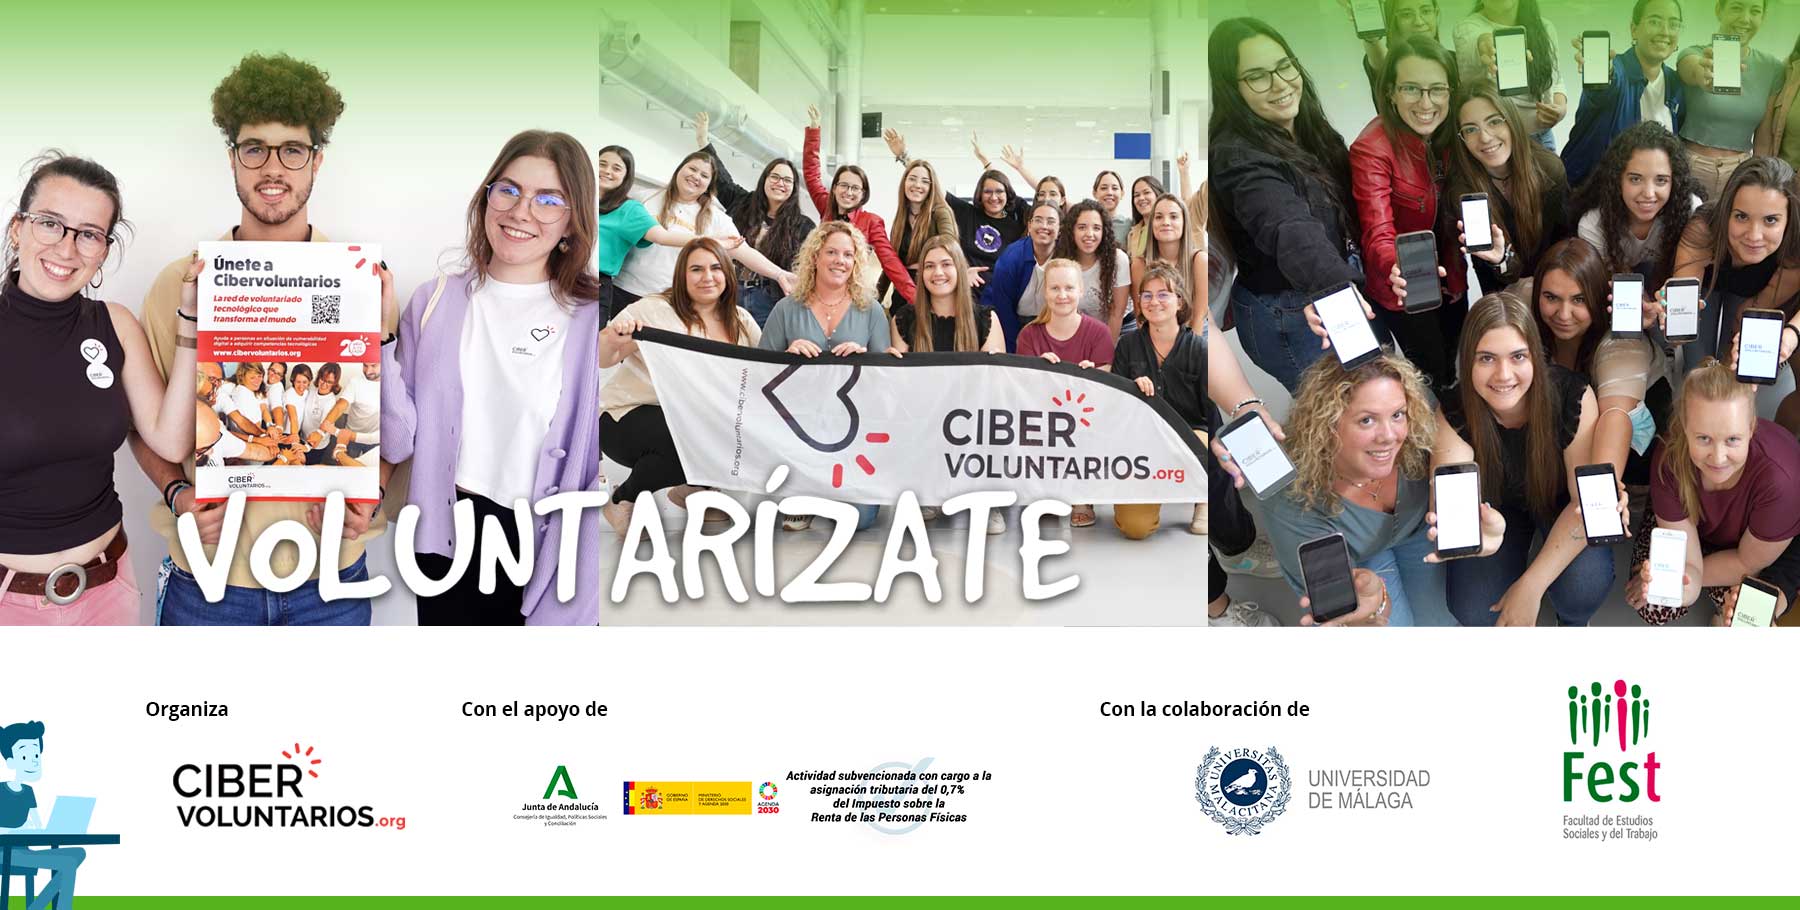 Estudiantes de la Universidad de Málaga se unen al voluntariado tecnológico